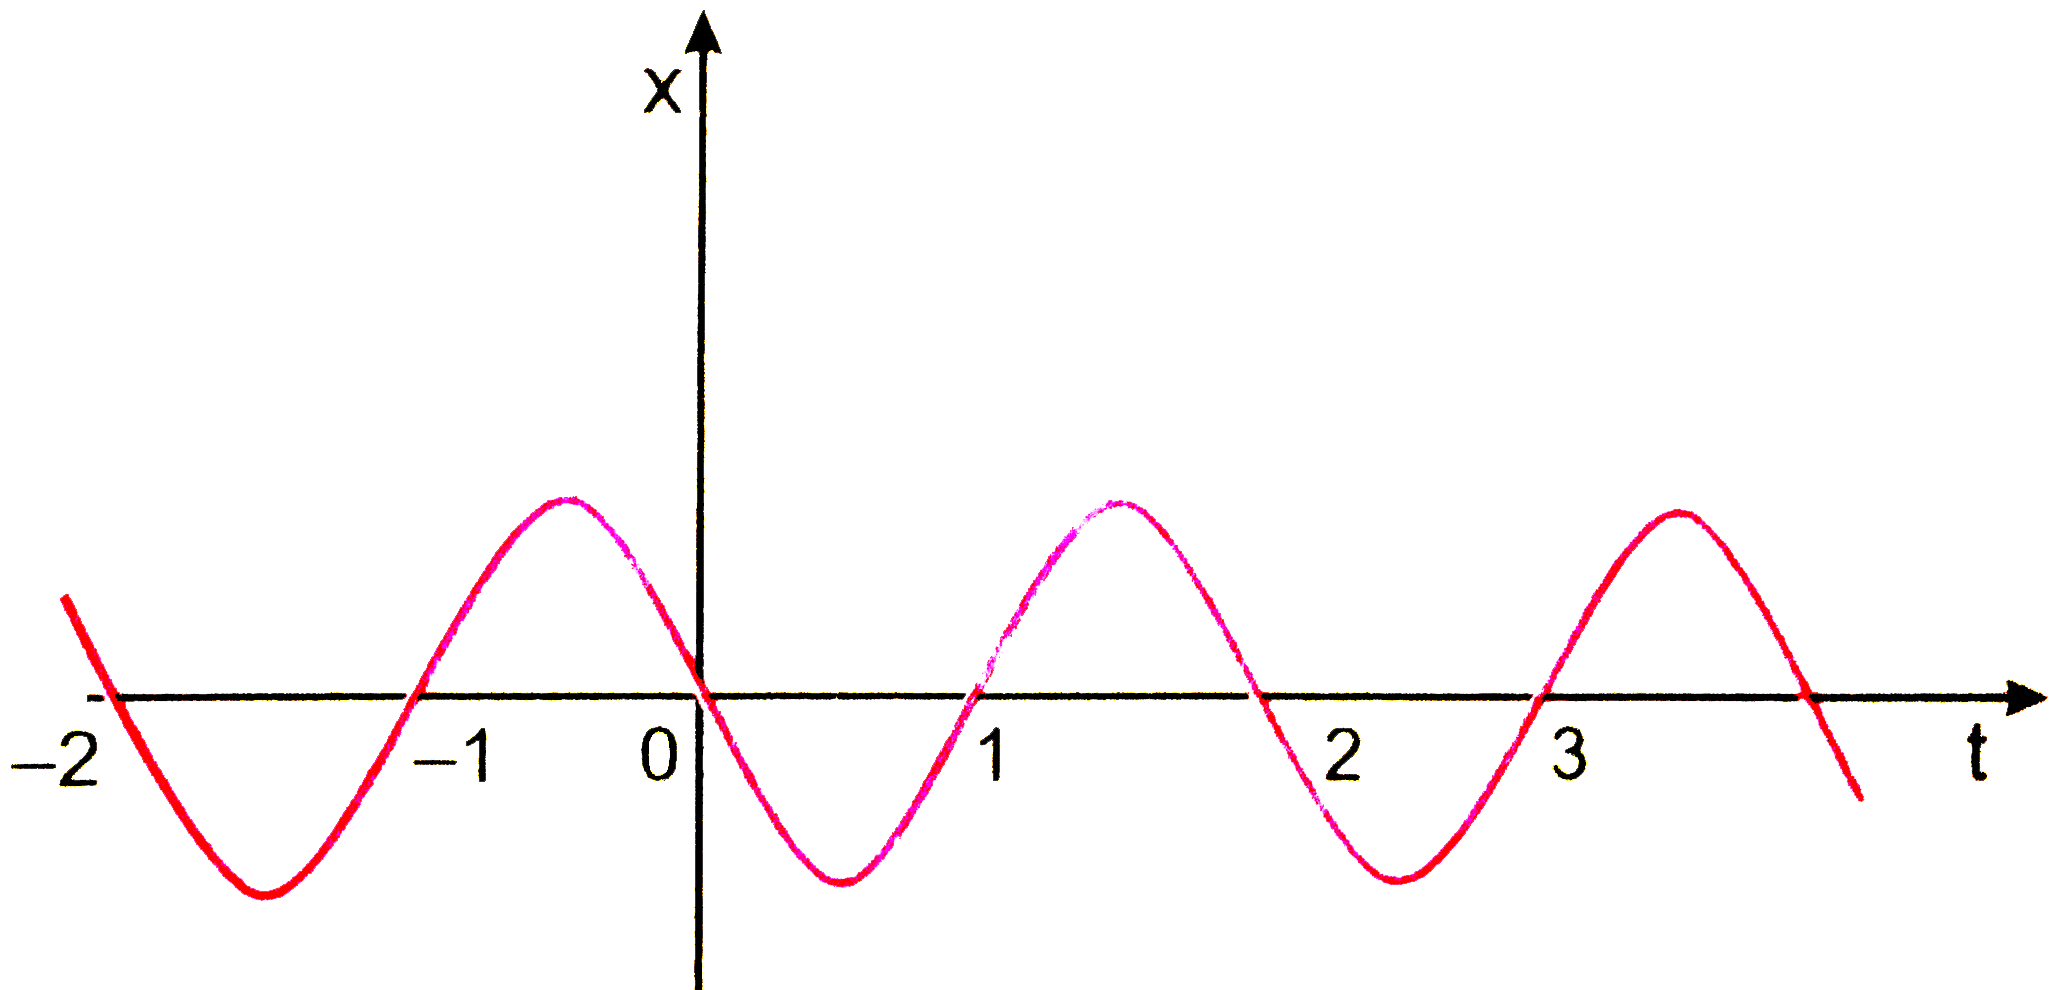 चित्र 3.54 में किसी कण की एकविमीय सरल आवर्ती गति के लिए x-t ग्राफ दिखाया गया है (इस गति के बारे में आप अध्याय 14 में पढ़ेंगे) समय t=-1*2 सेकण्ड पर कण के स्थिति वेग व त्वरण के चिन्ह क्या होंगे ?